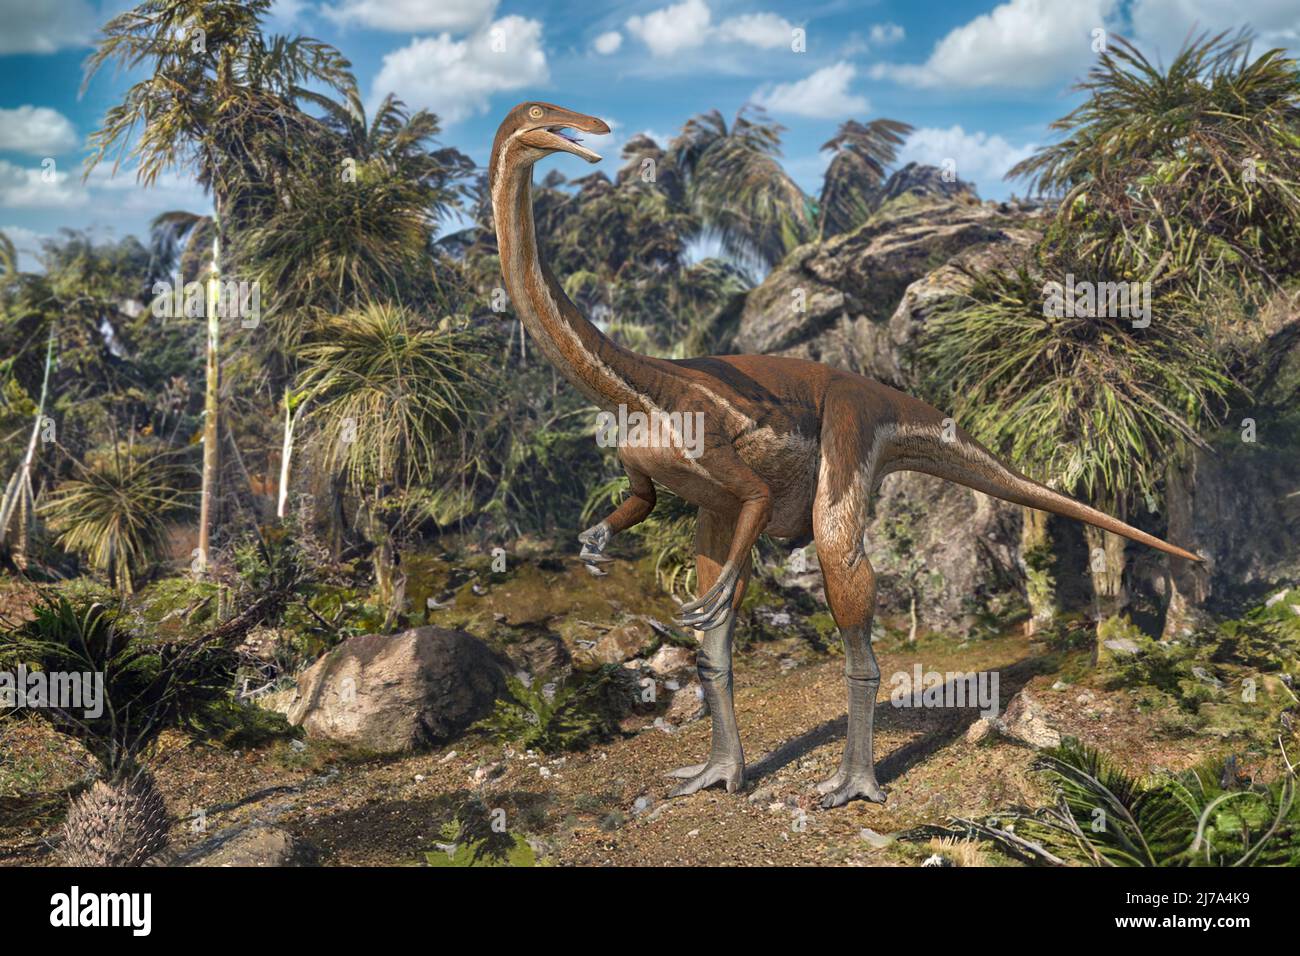 Gallimimus dinosaur, illustration Stock Photo